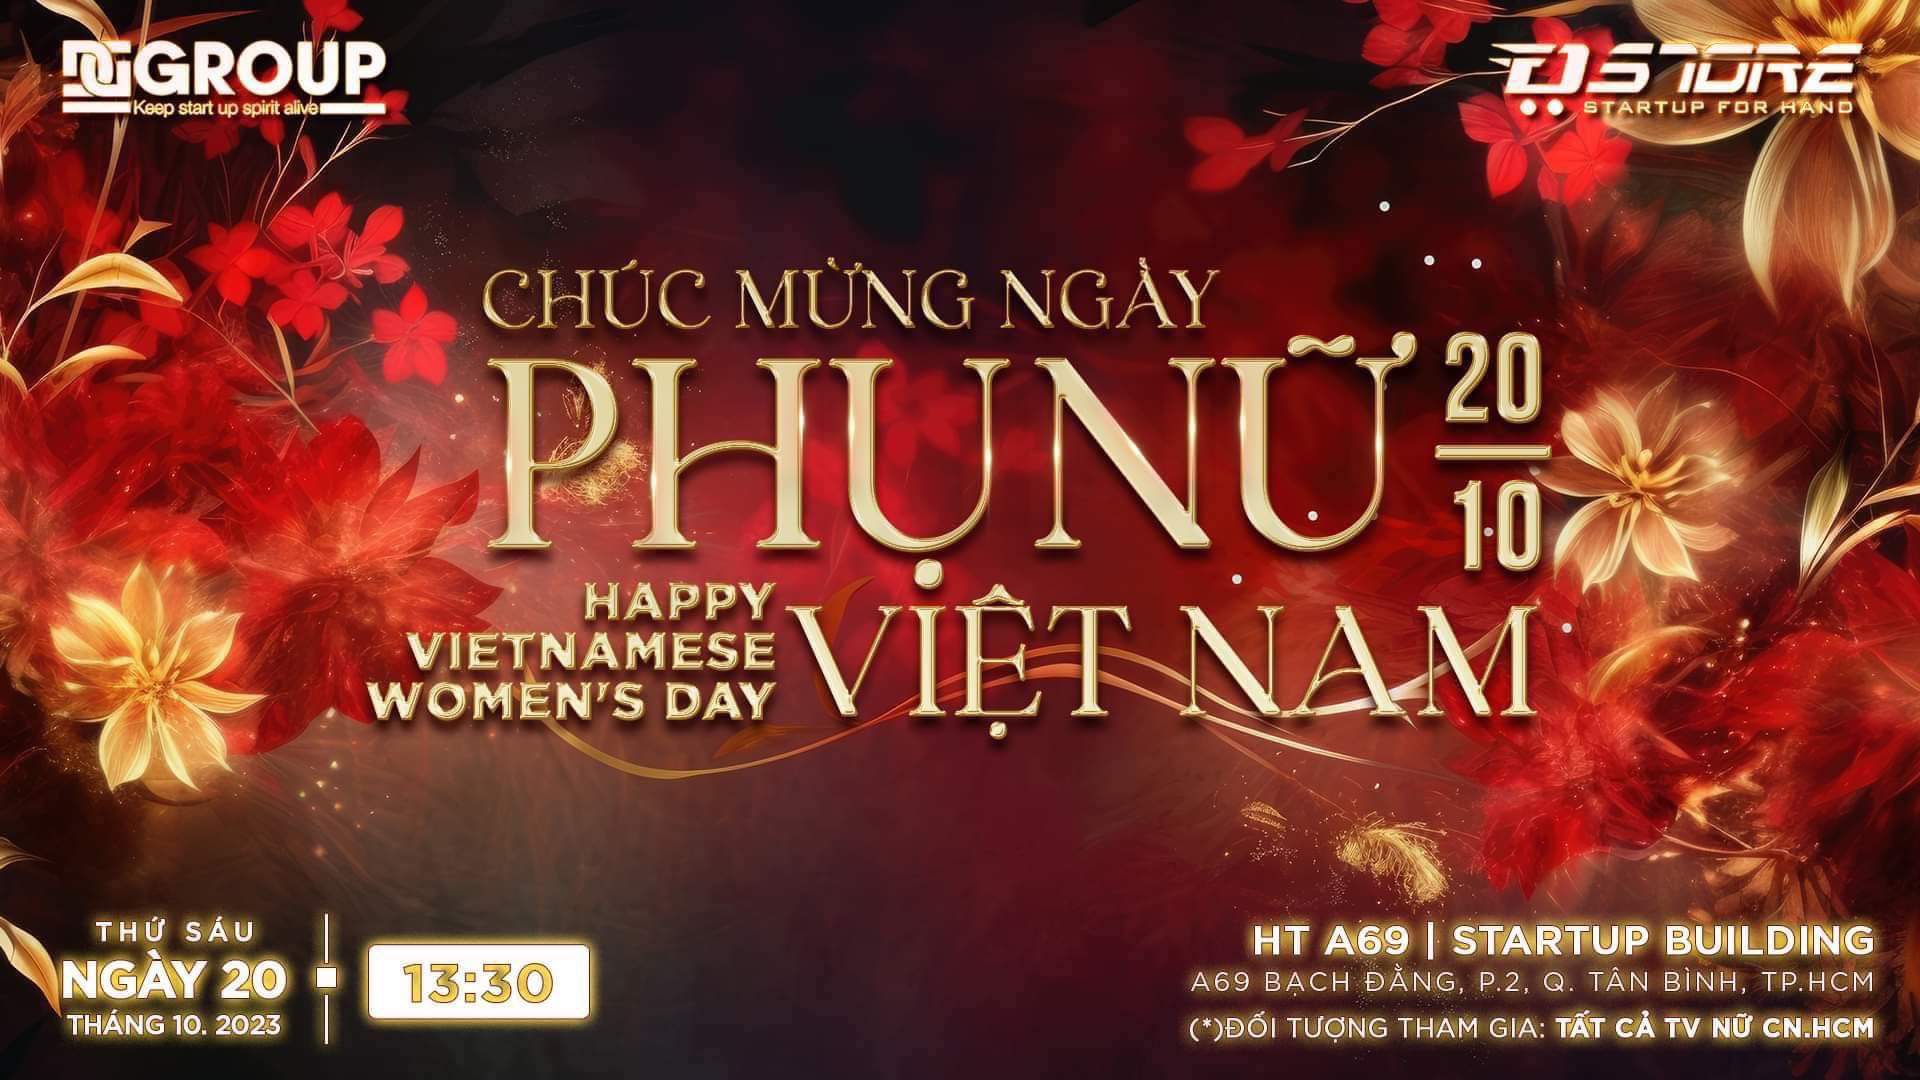 Chúc mừng ngày Phụ Nữ Việt Nam cùng đội ngũ nhân sự Nữ của Doanh nghiệp